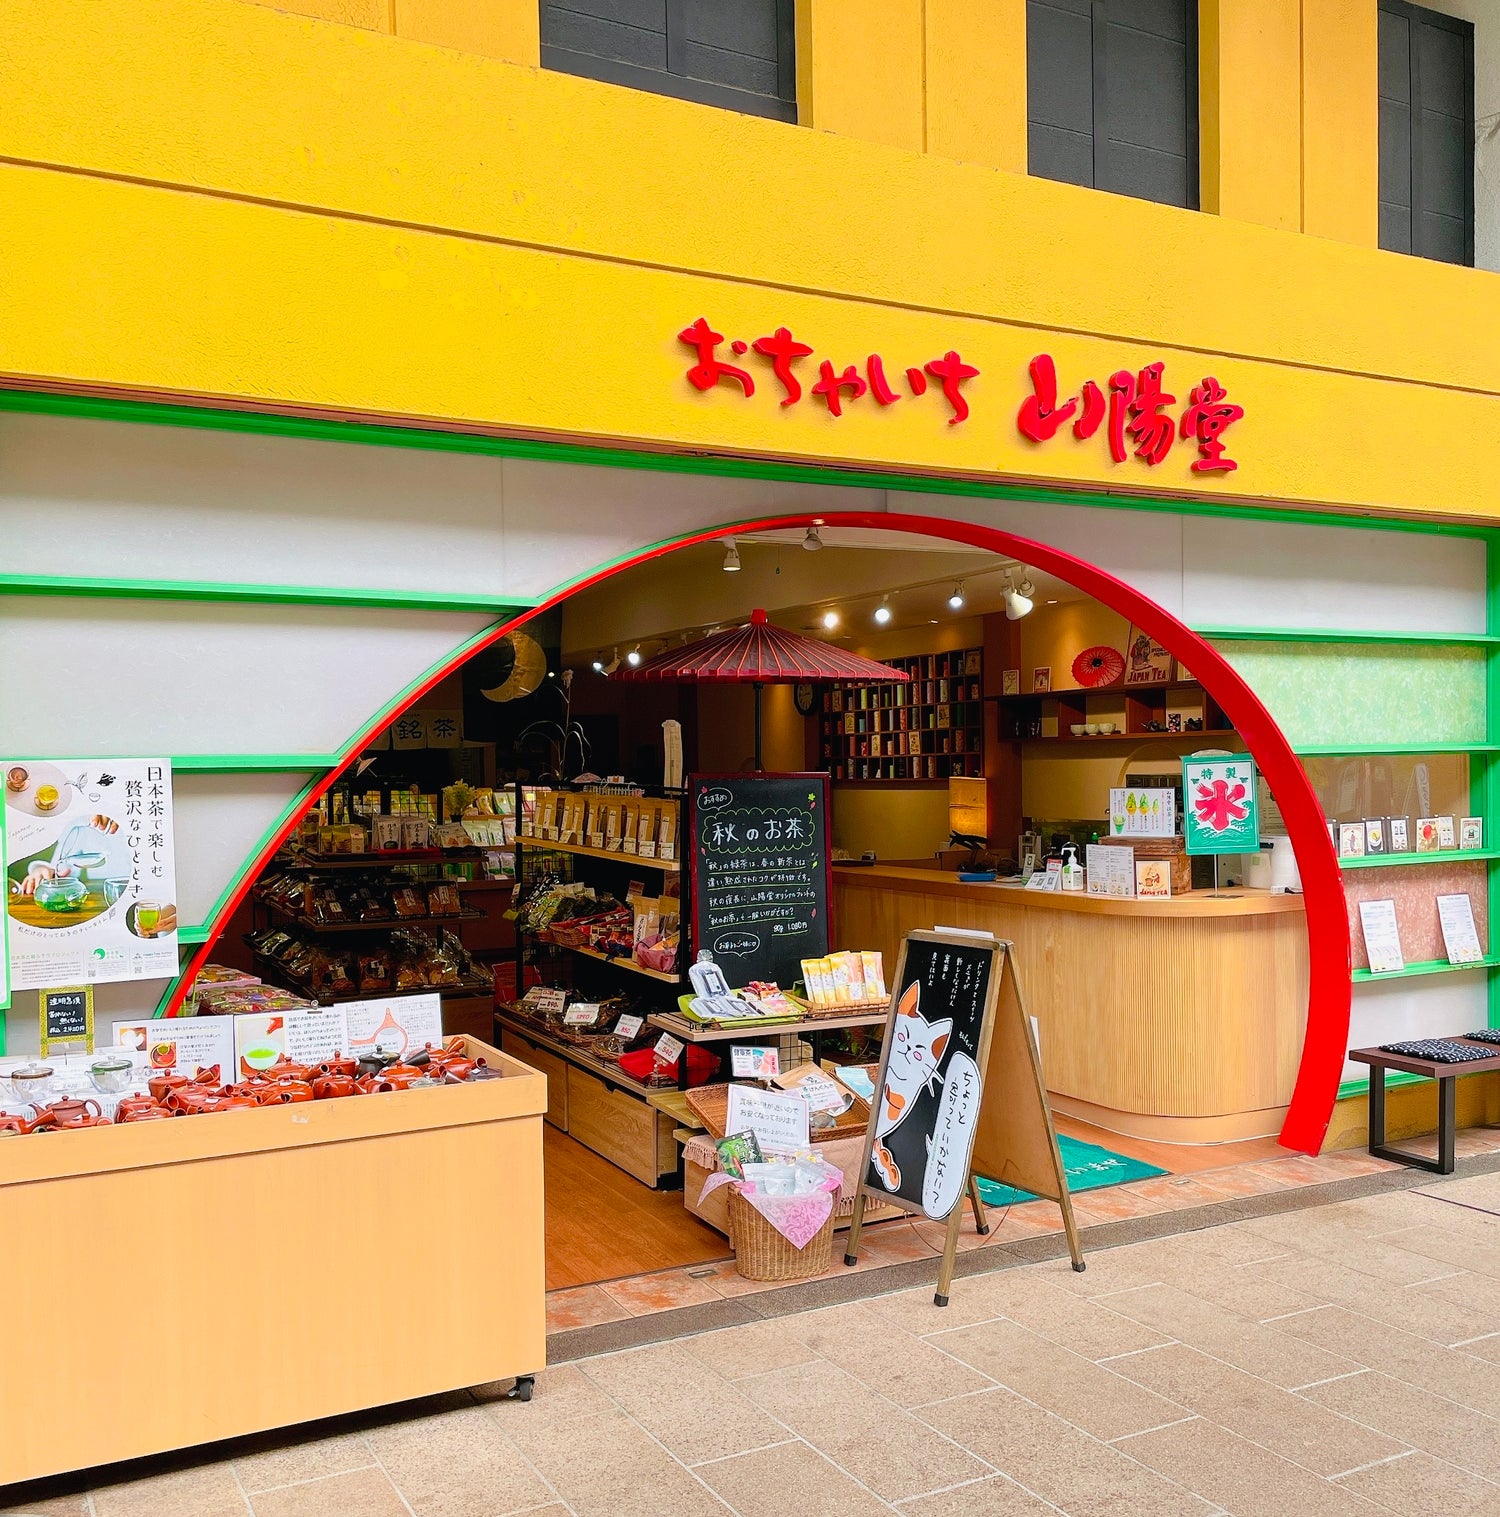 おちゃいち山陽堂の店舗情報です。営業時間は9:00～19:00です。住所は熊本県熊本市東区若葉1-35-18で熊本の茶葉を販売しております。